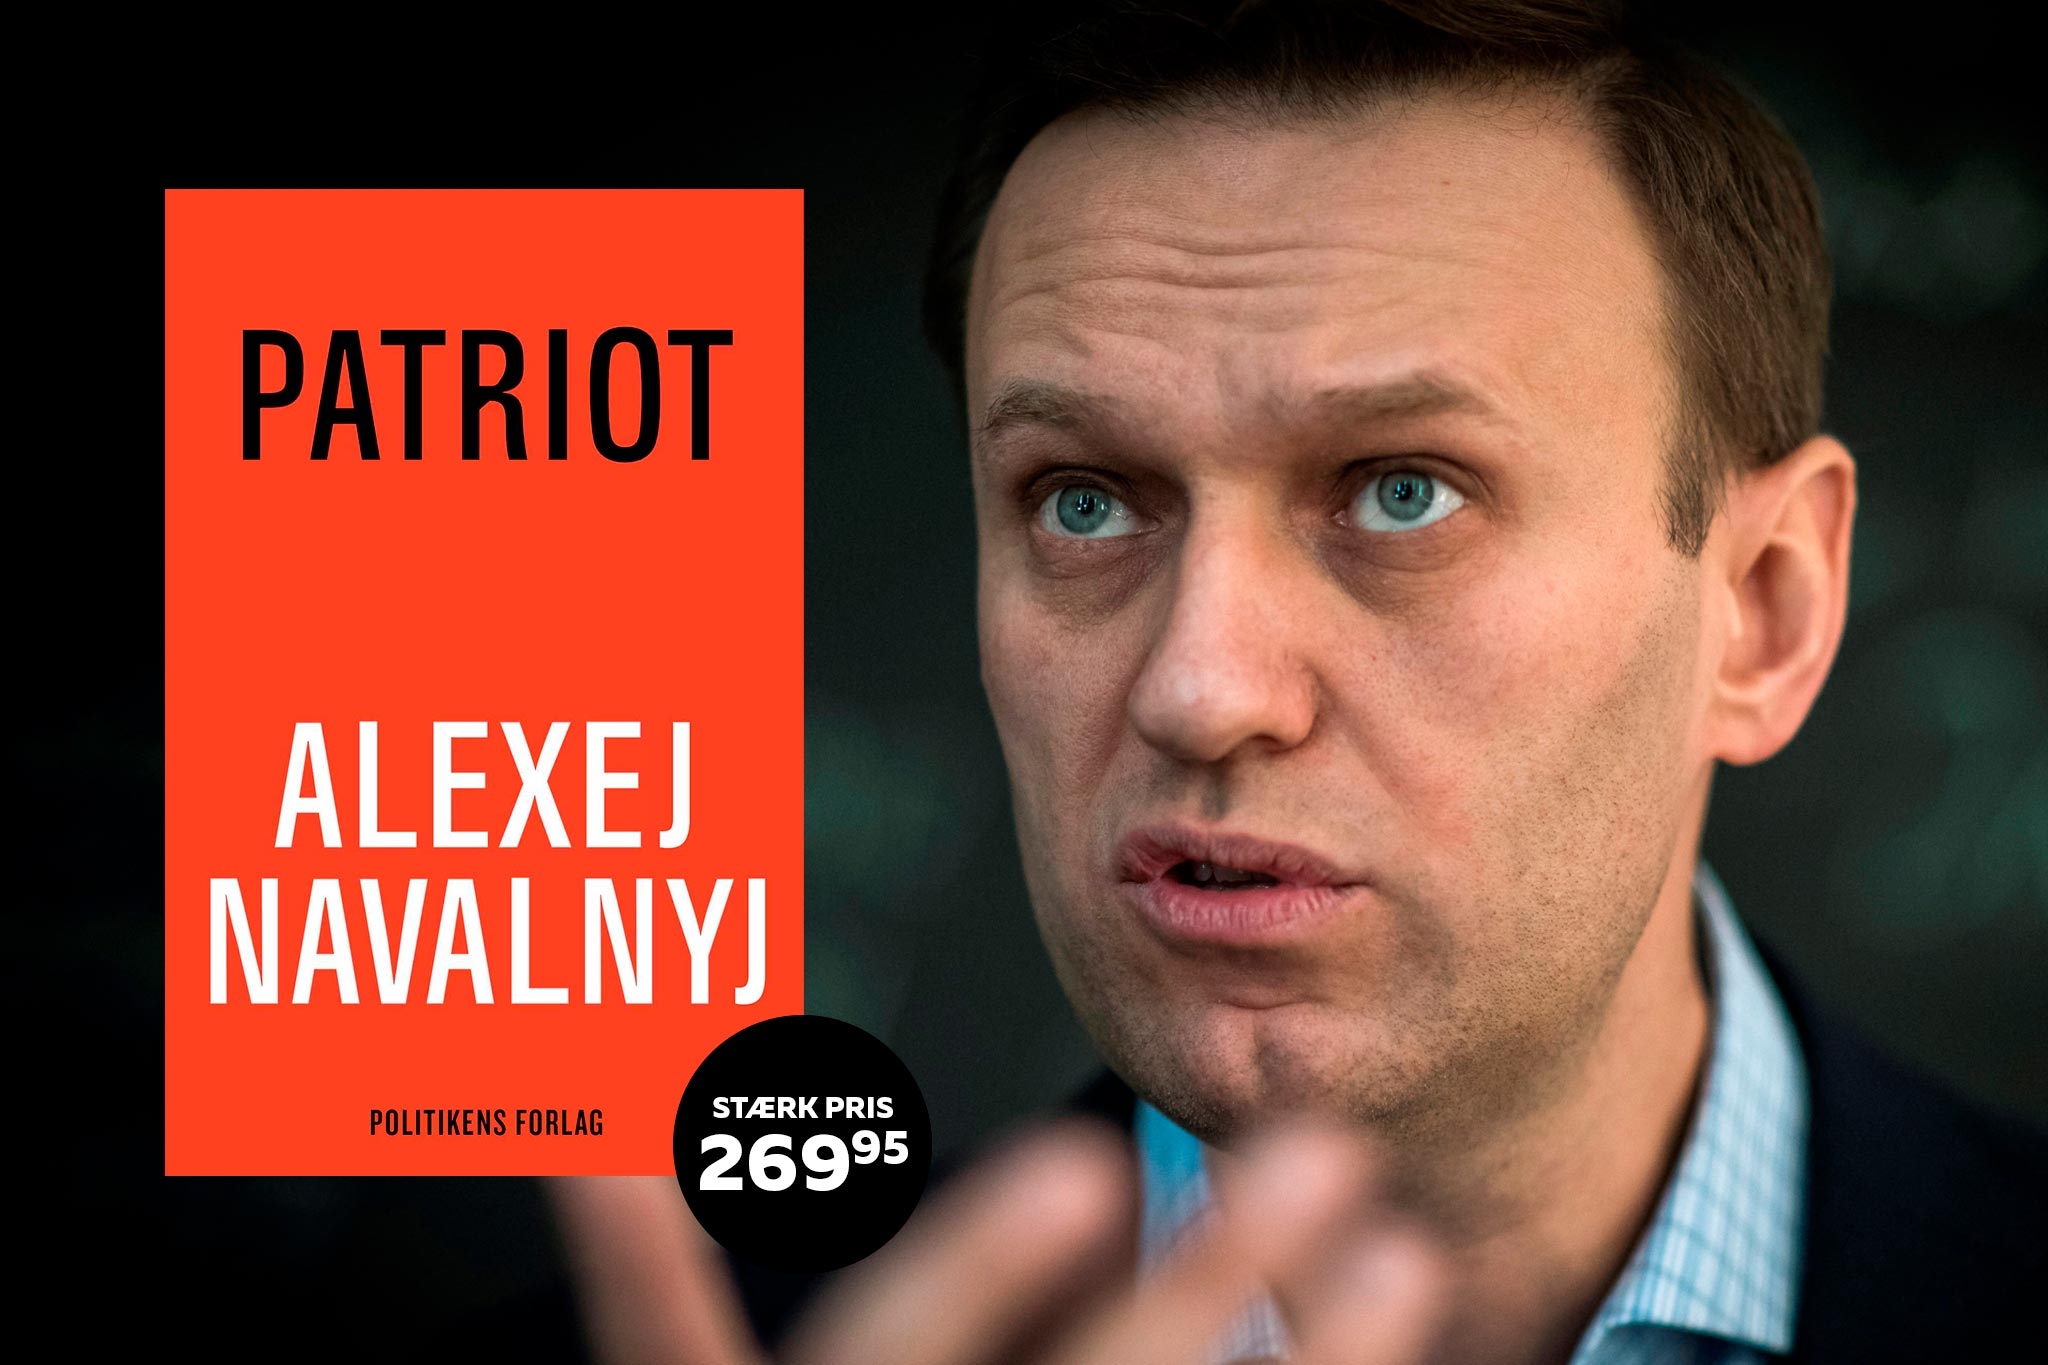 Patriot af Alexej Navalnjy